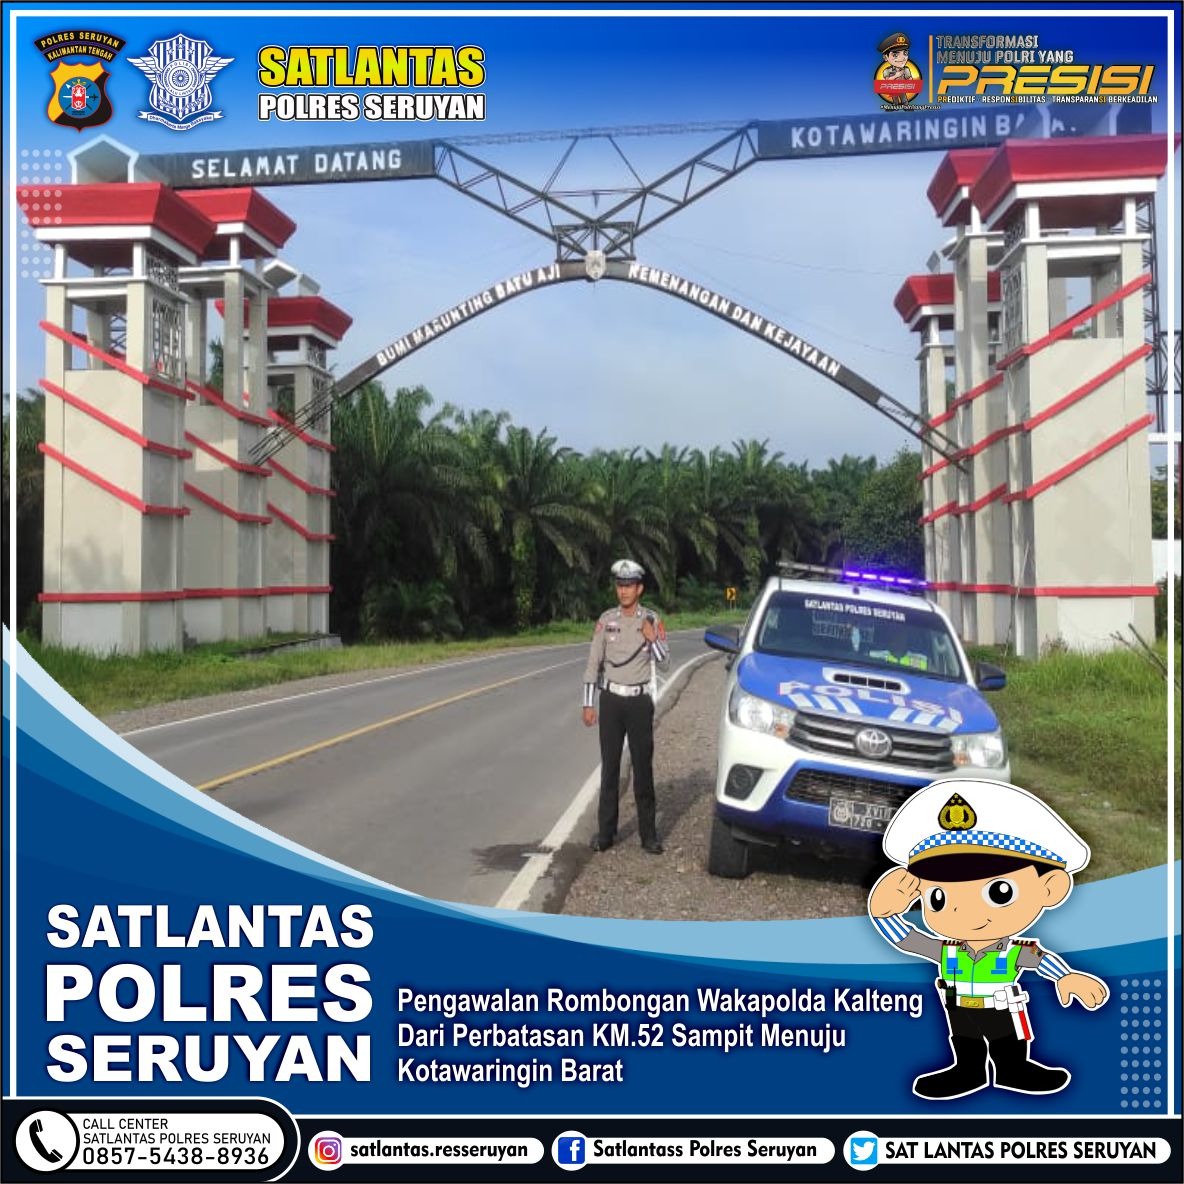 Satlantas Polres Seruyan Lakukan Pengawalan Rombongan Wakapolda Kalteng dari Perbatasan KM.52 Sampit ke Kotawaringin Barat 1